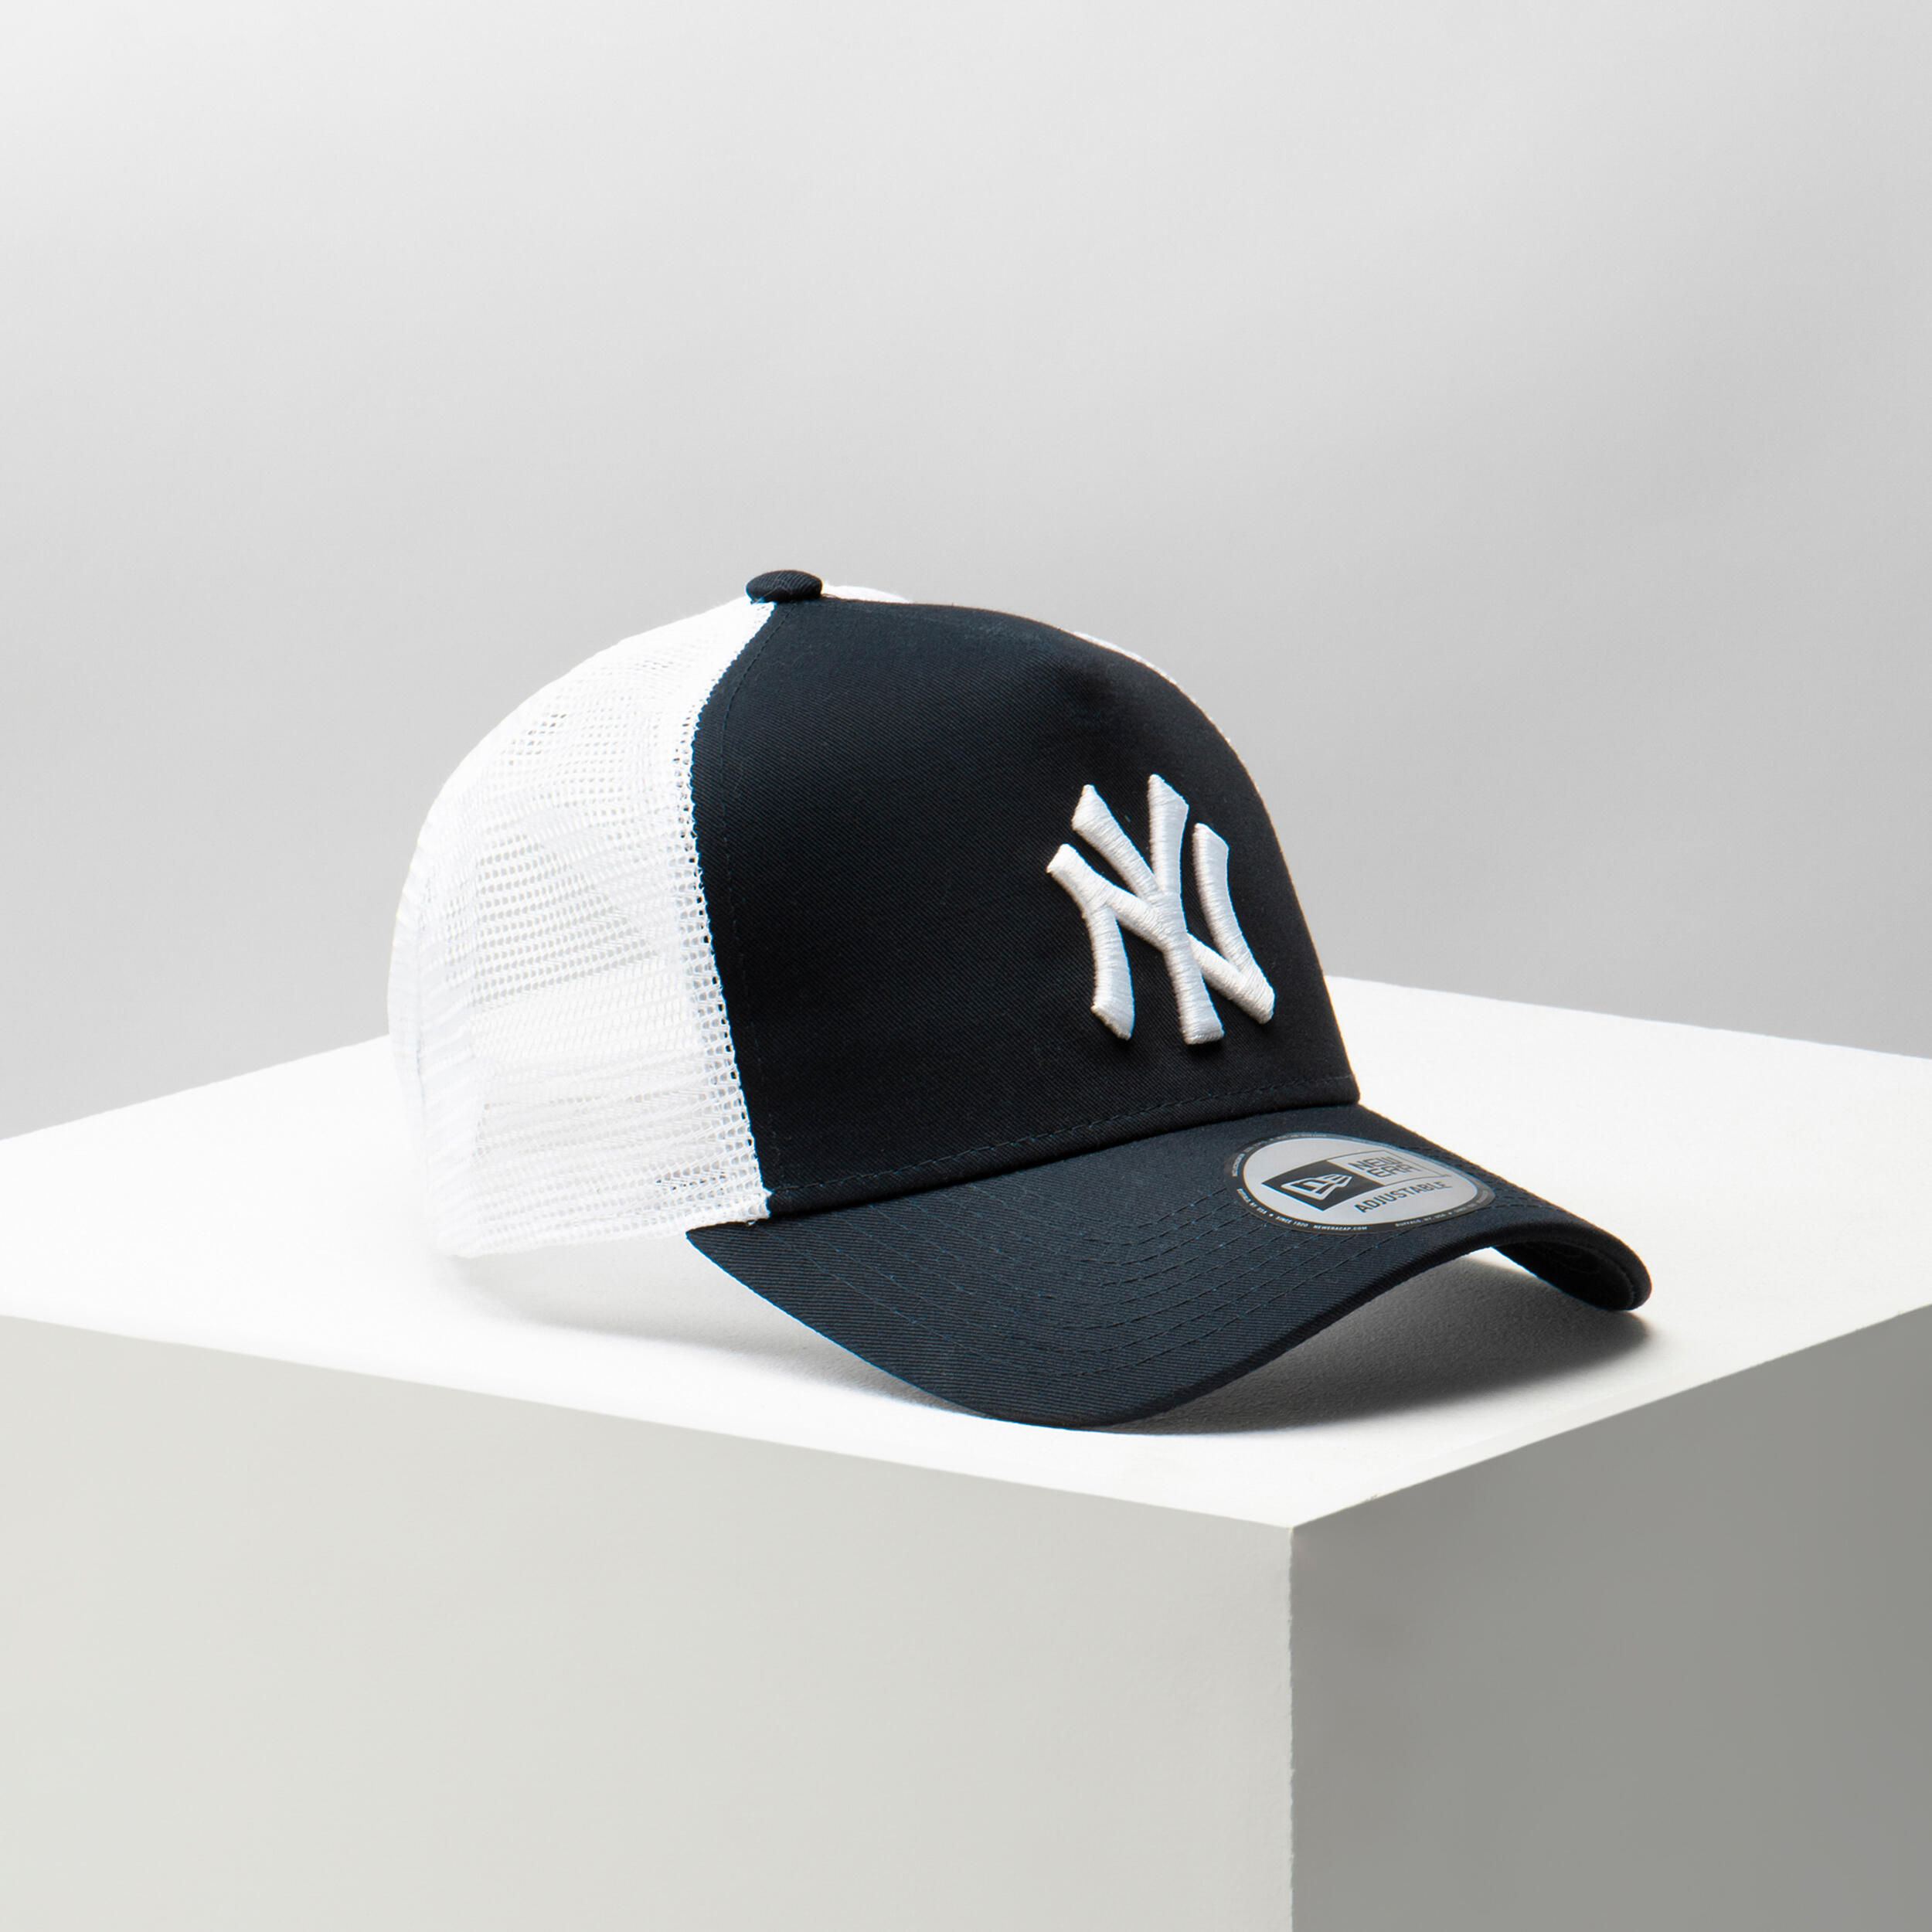 Men's/Women's MLB Baseball Cap - New York Yankees Black/White 9/9